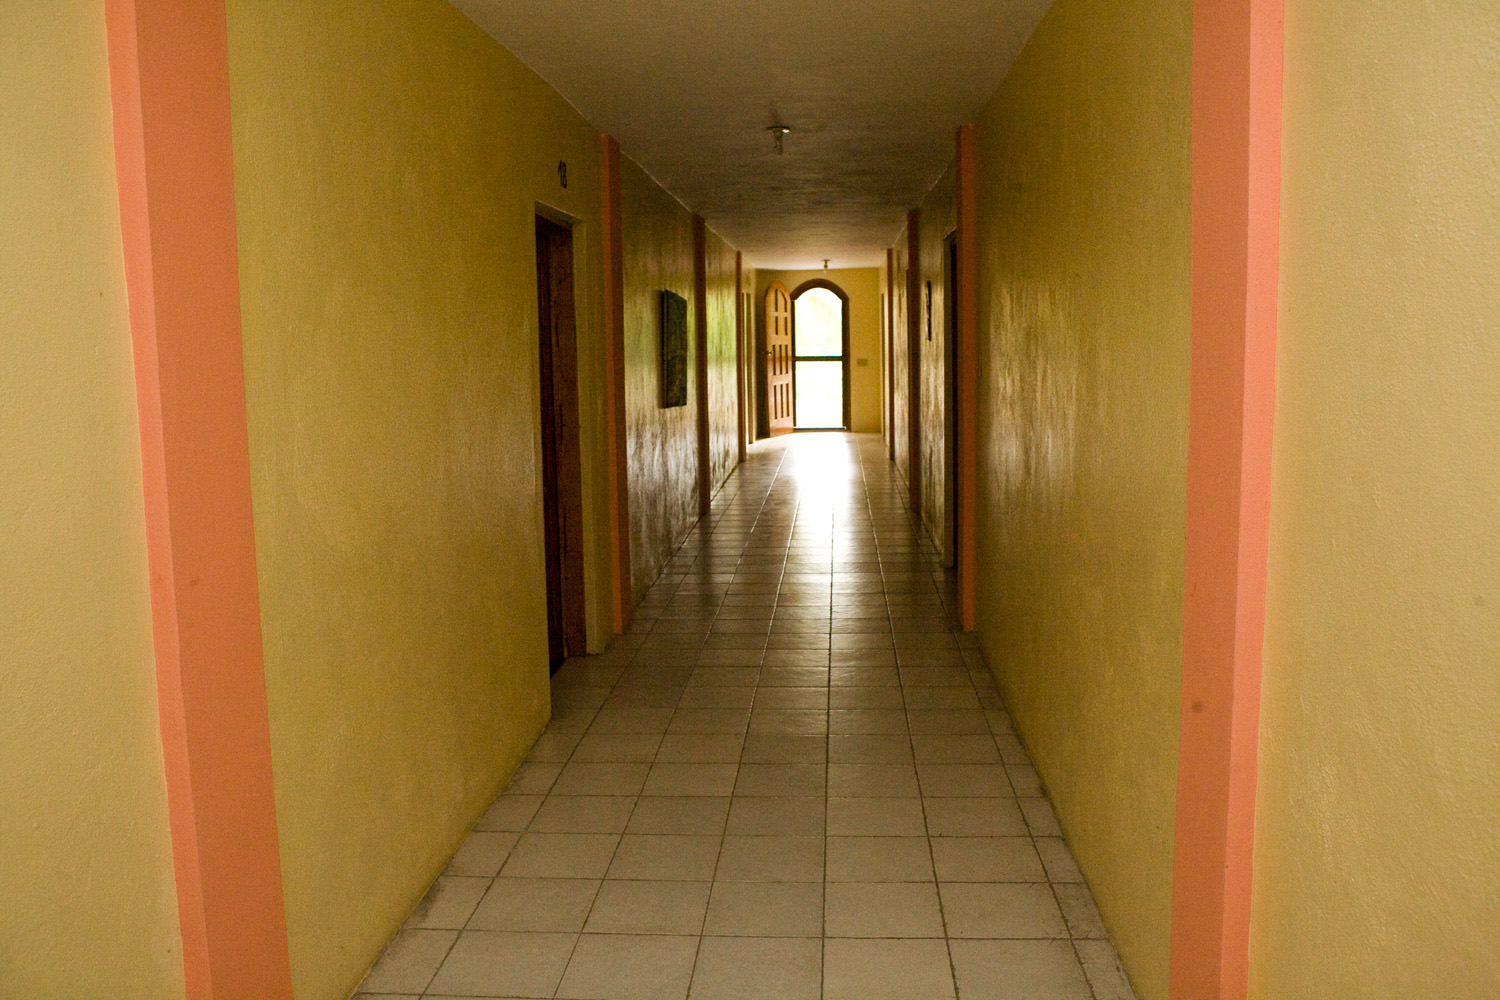 hosanna house hallway.jpg